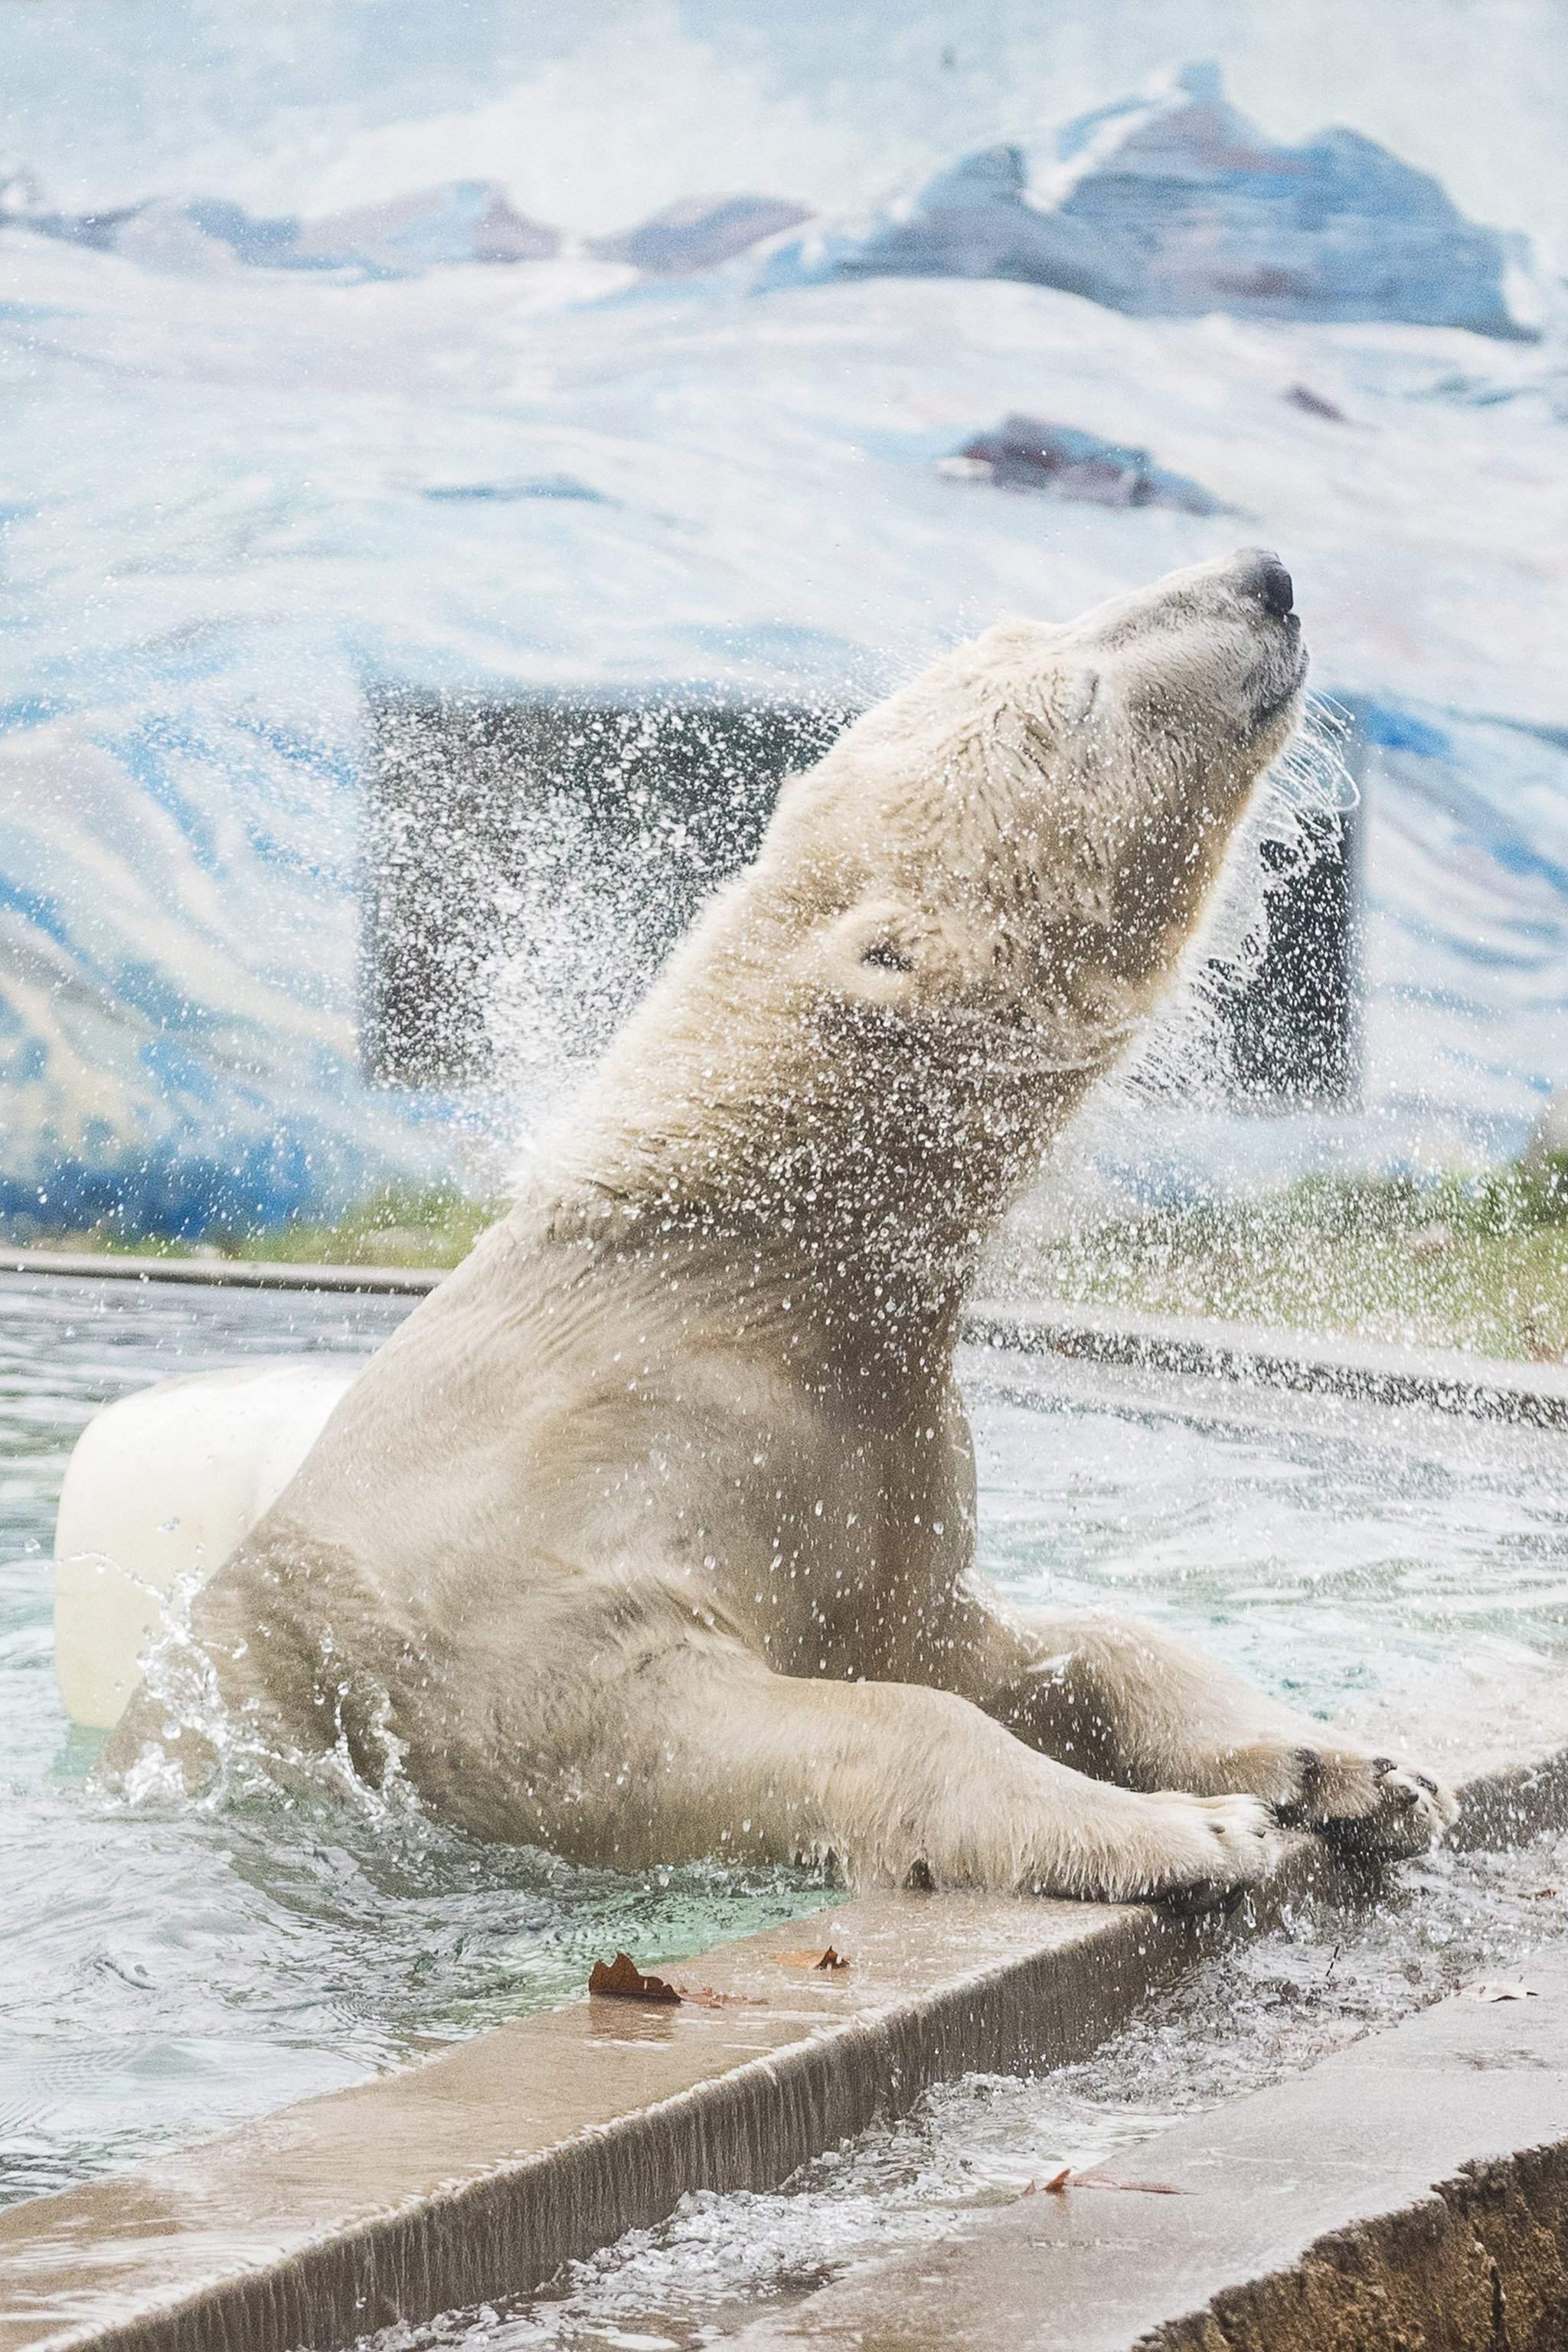 Jegesmedve érkezett a Nyíregyházi Állatparkba